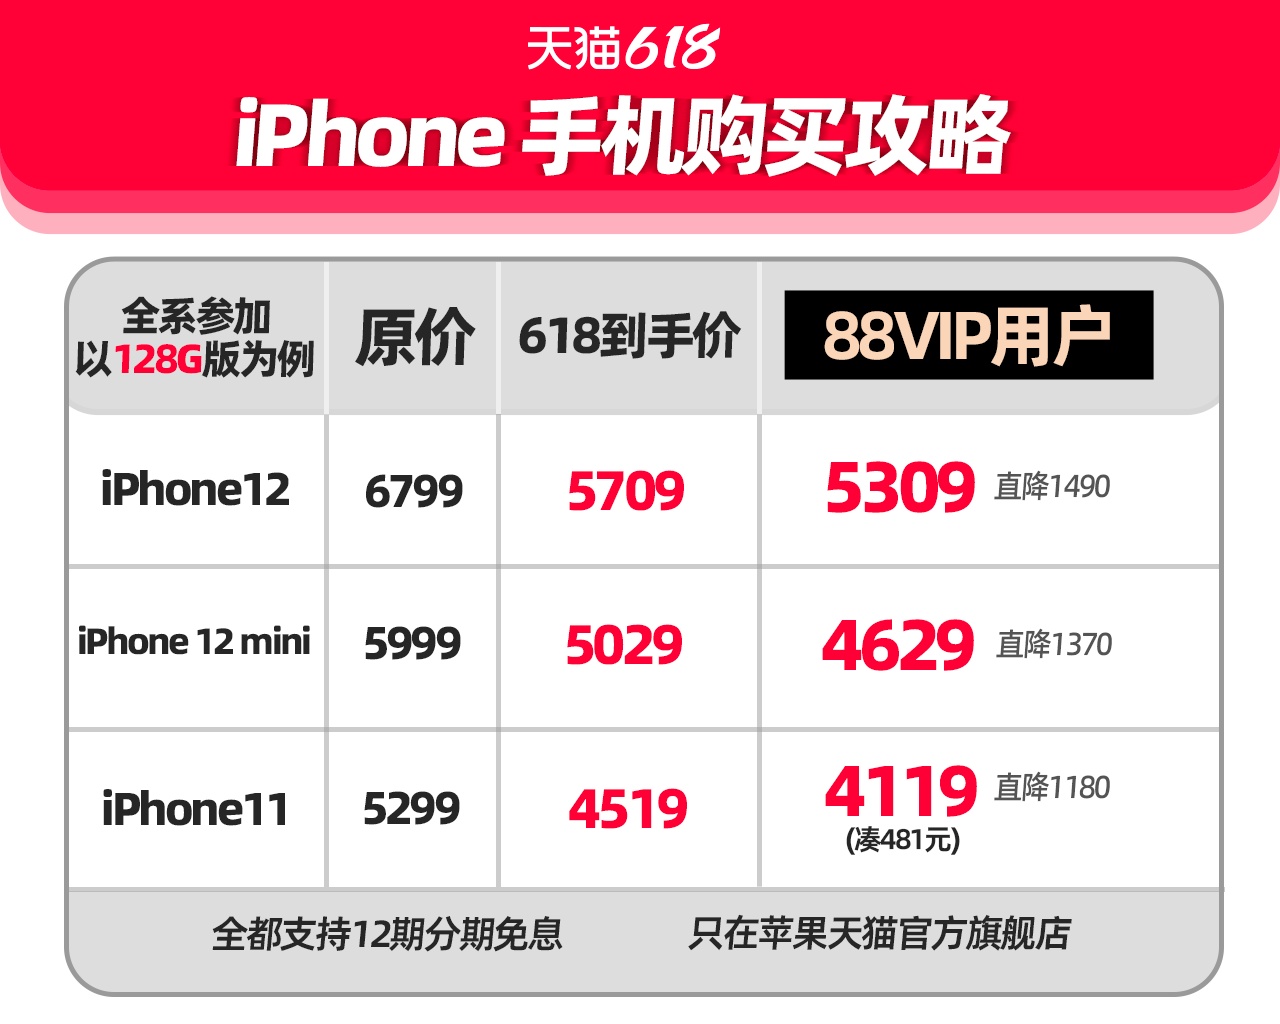 天猫618跨店满减涵盖苹果官方旗舰店 iPhone这三款手机可满减